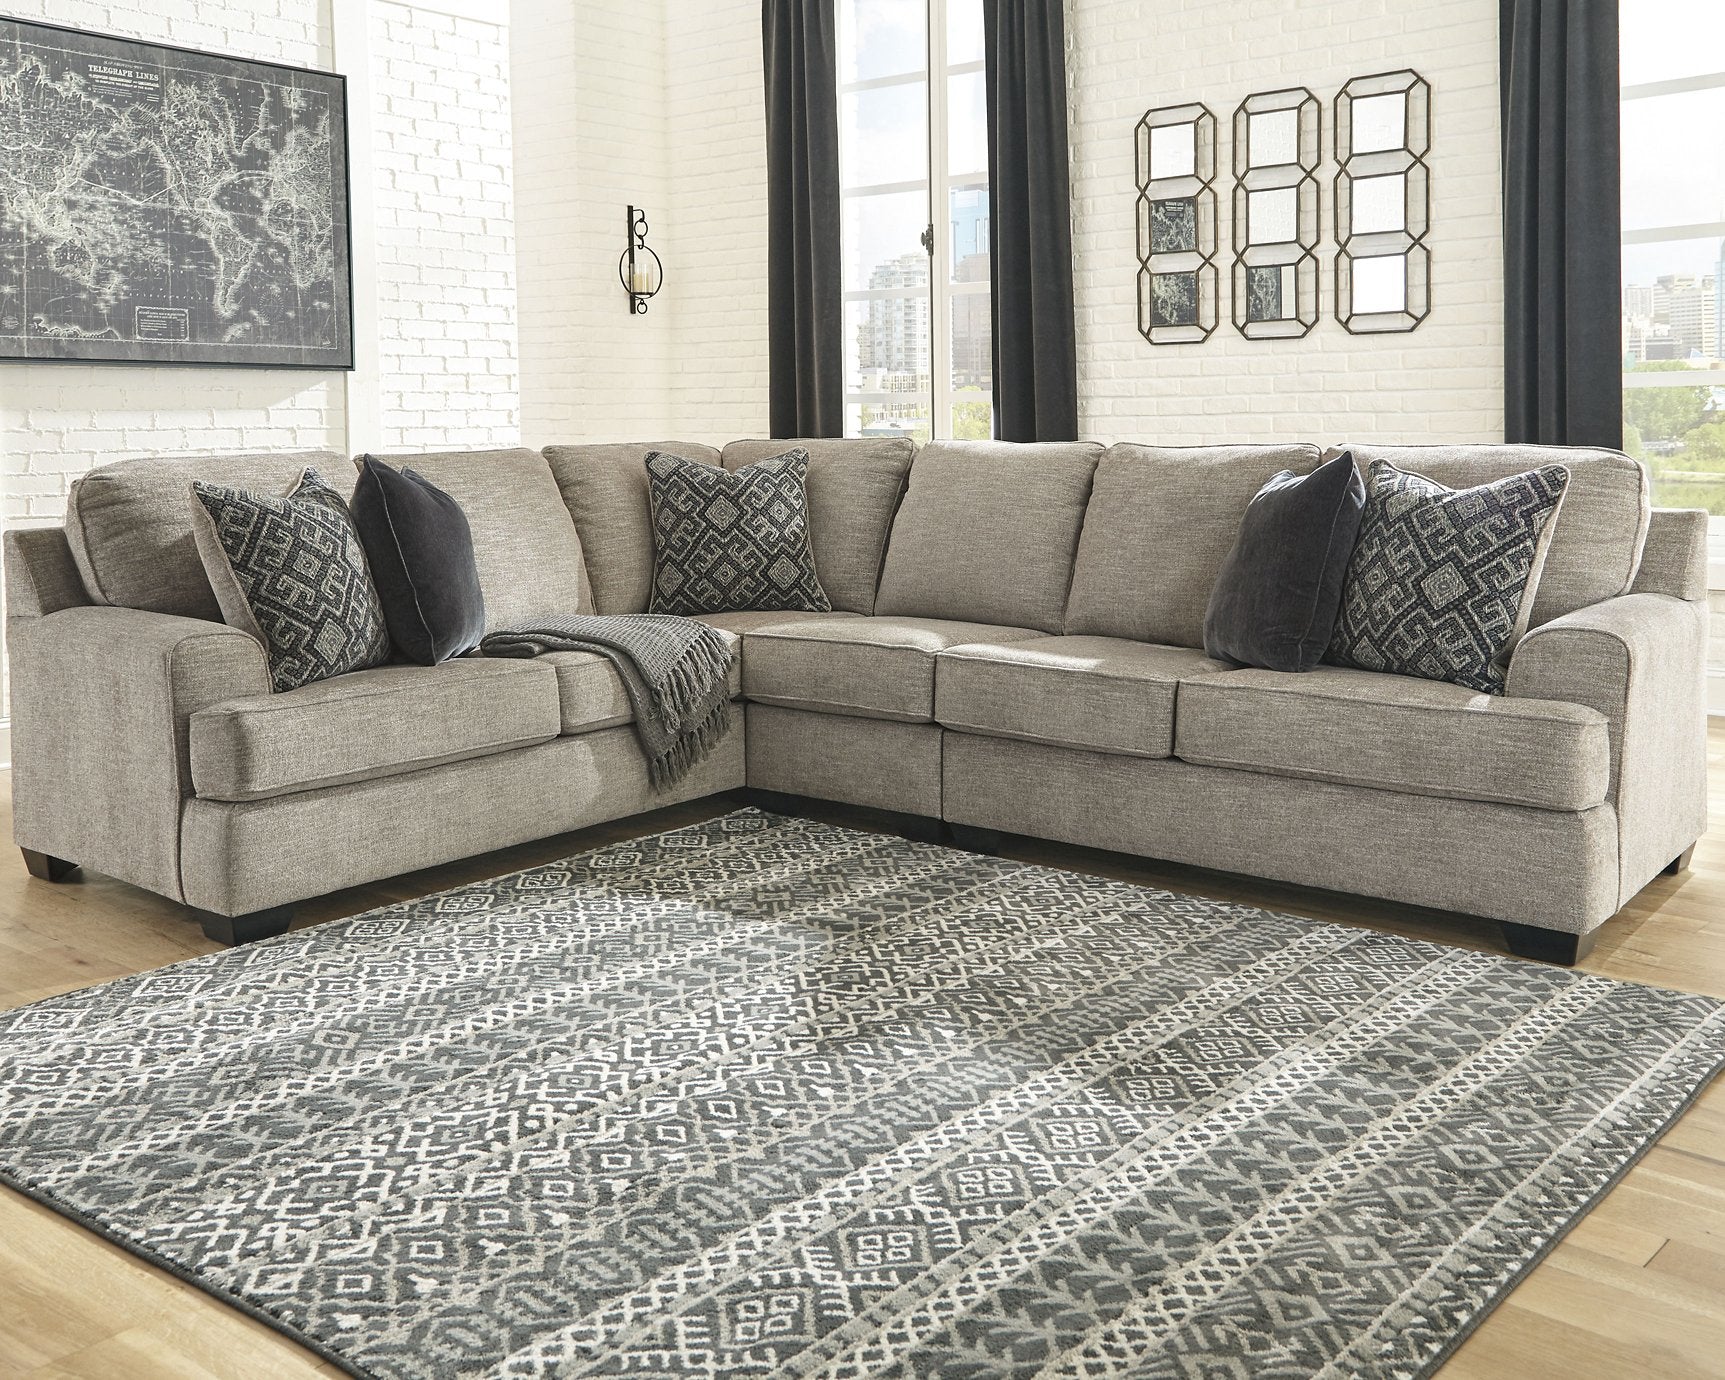 Bovarian Living Room Set - Half Price Furniture